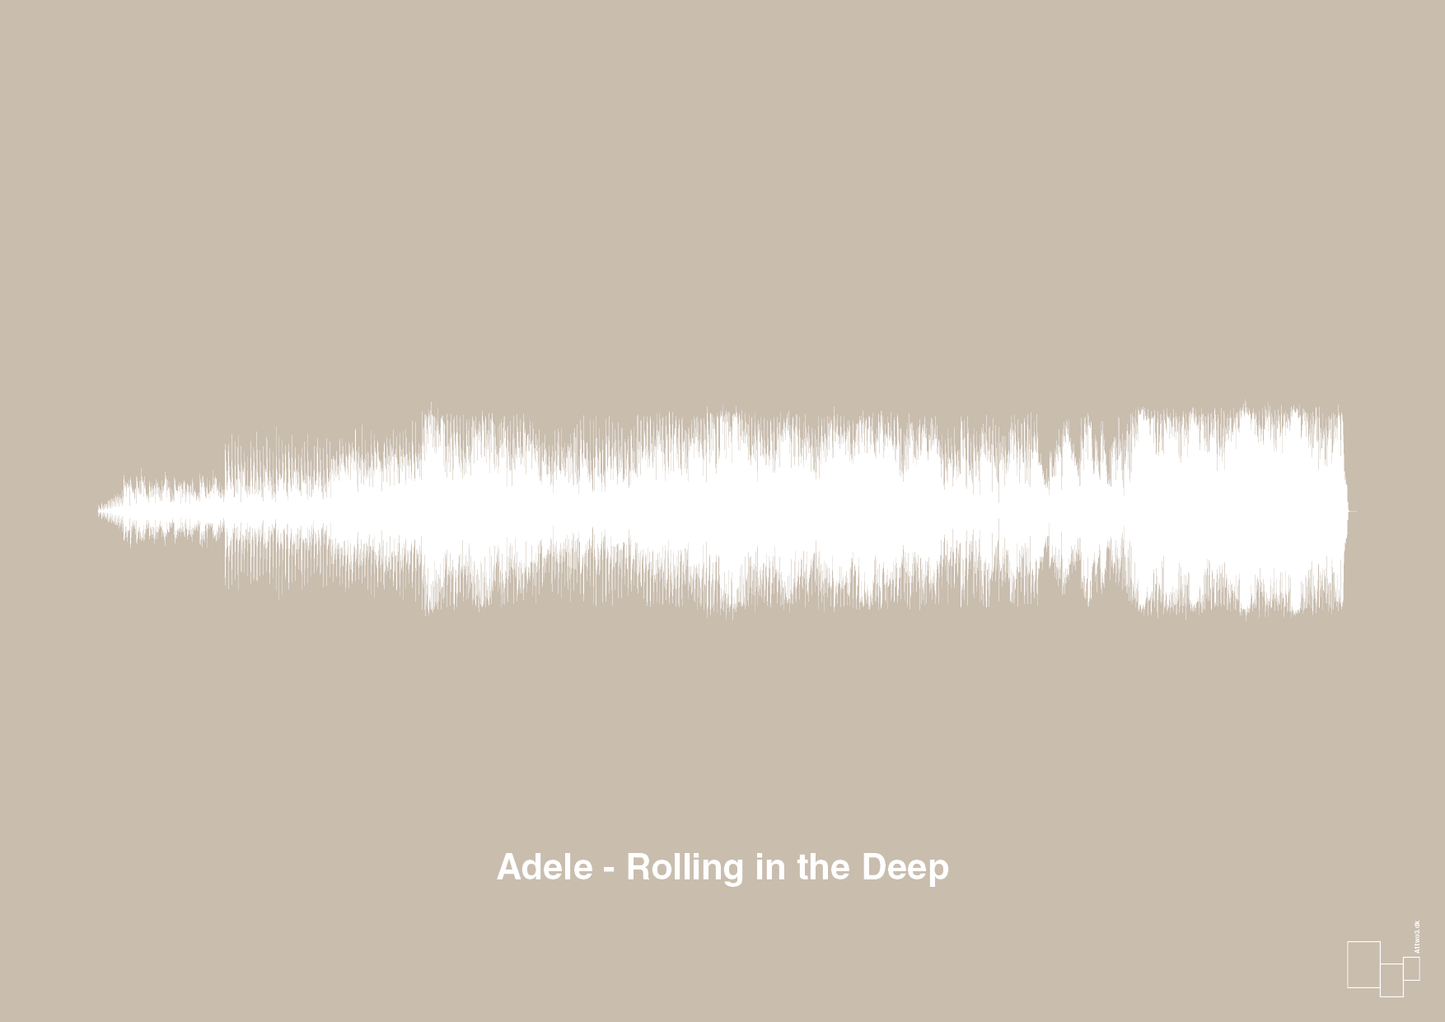 adele - rolling in the deep - Plakat med Musik i Creamy Mushroom